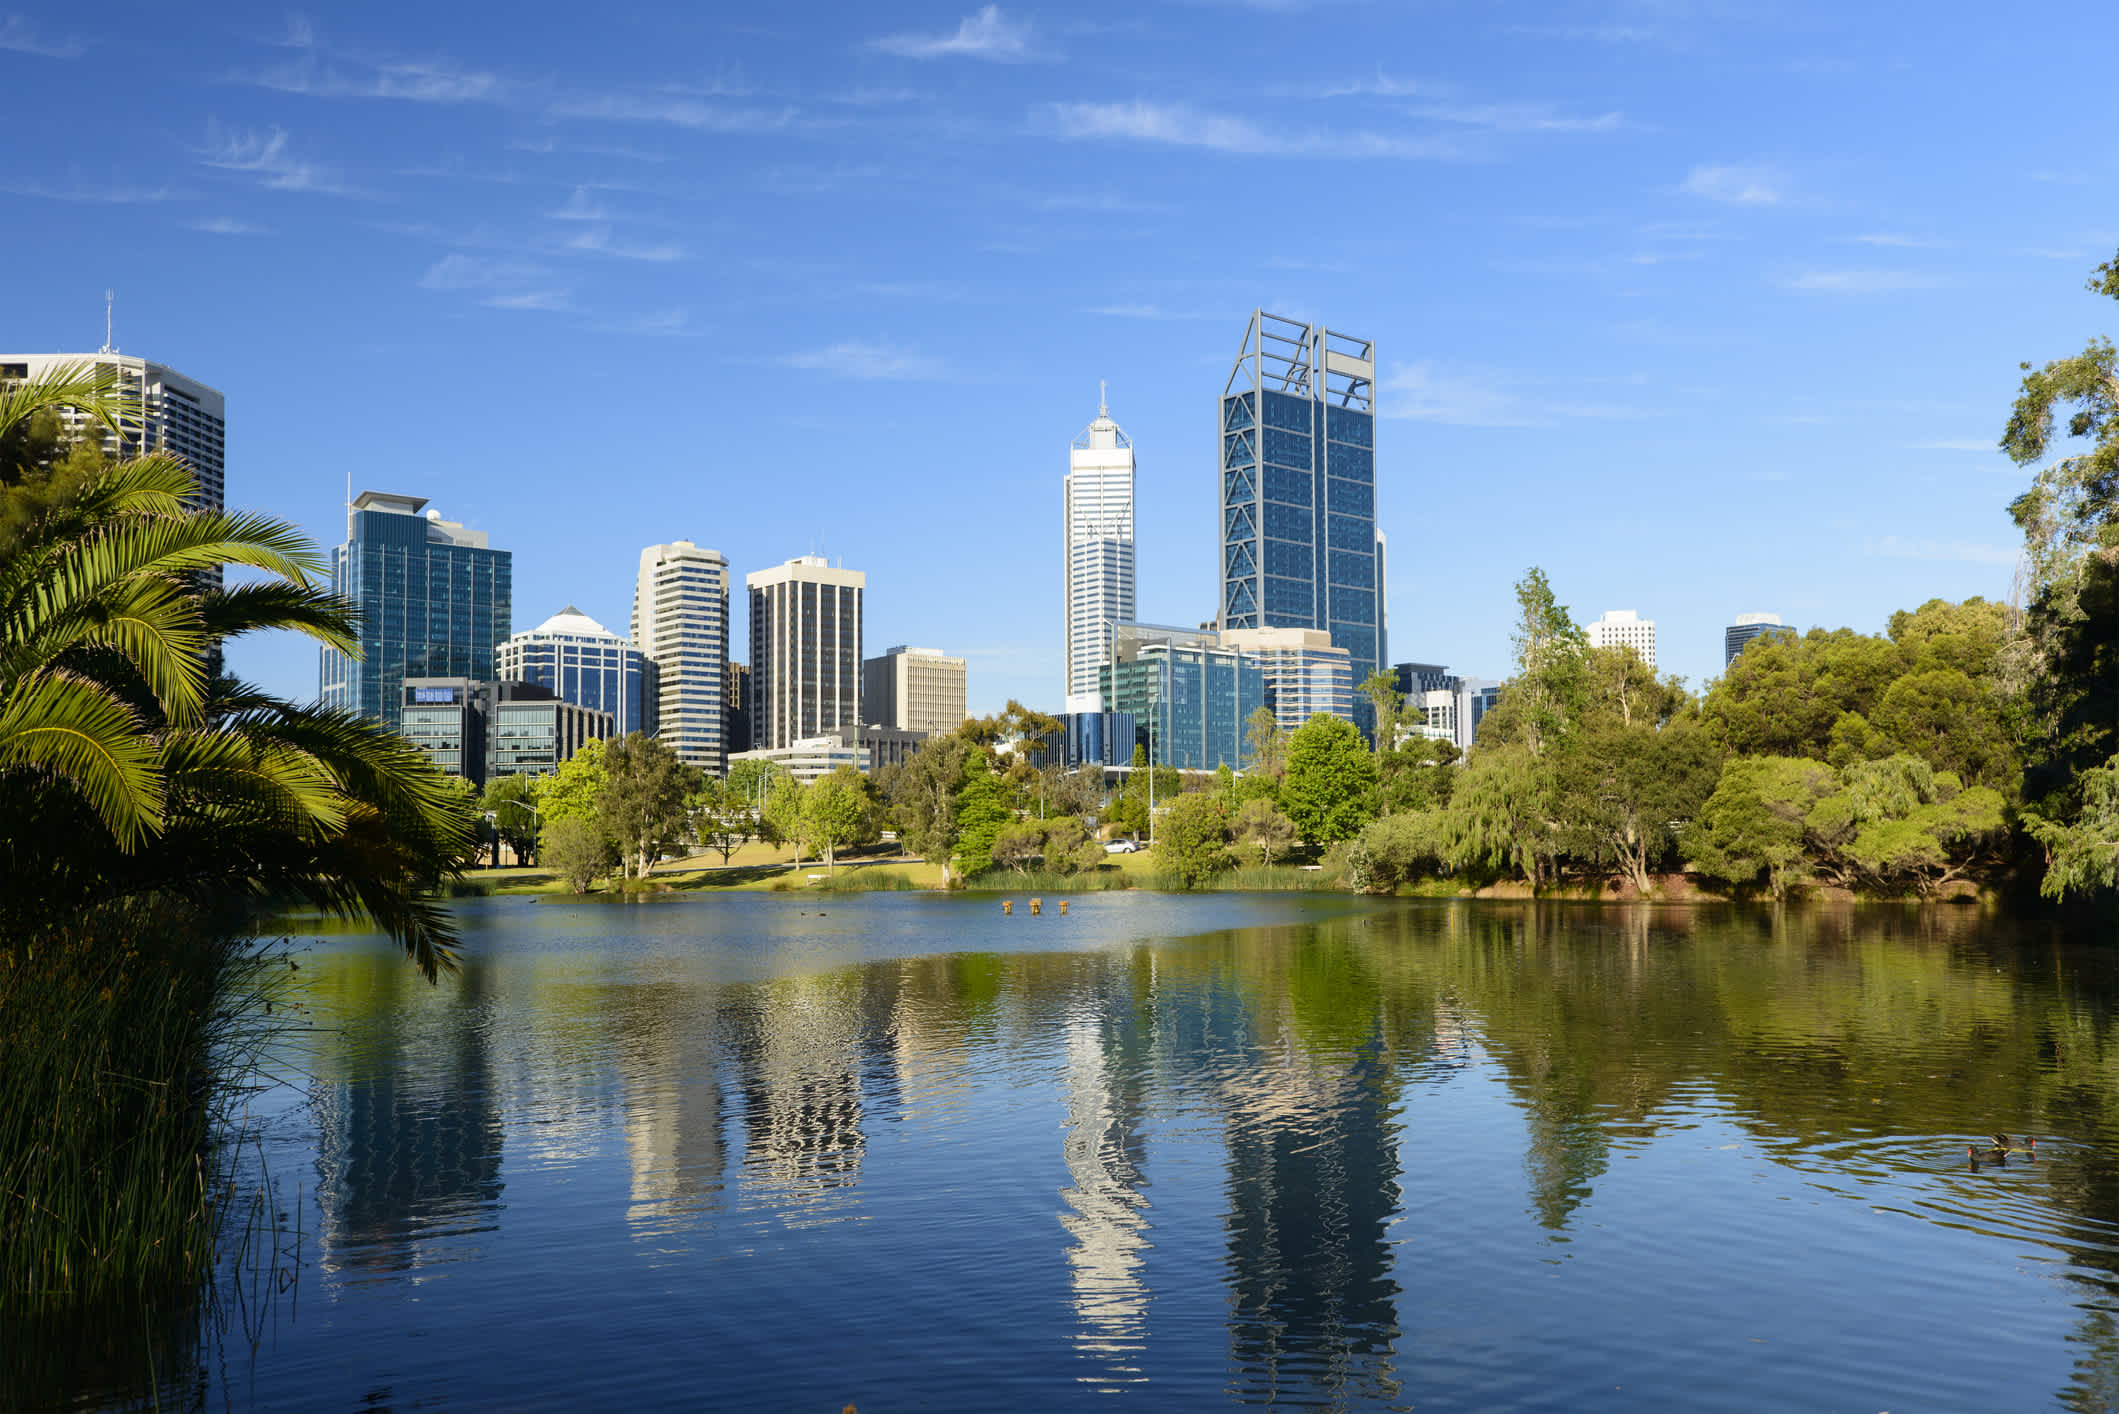 Panoramablick auf die Skyline von Perth in Australien